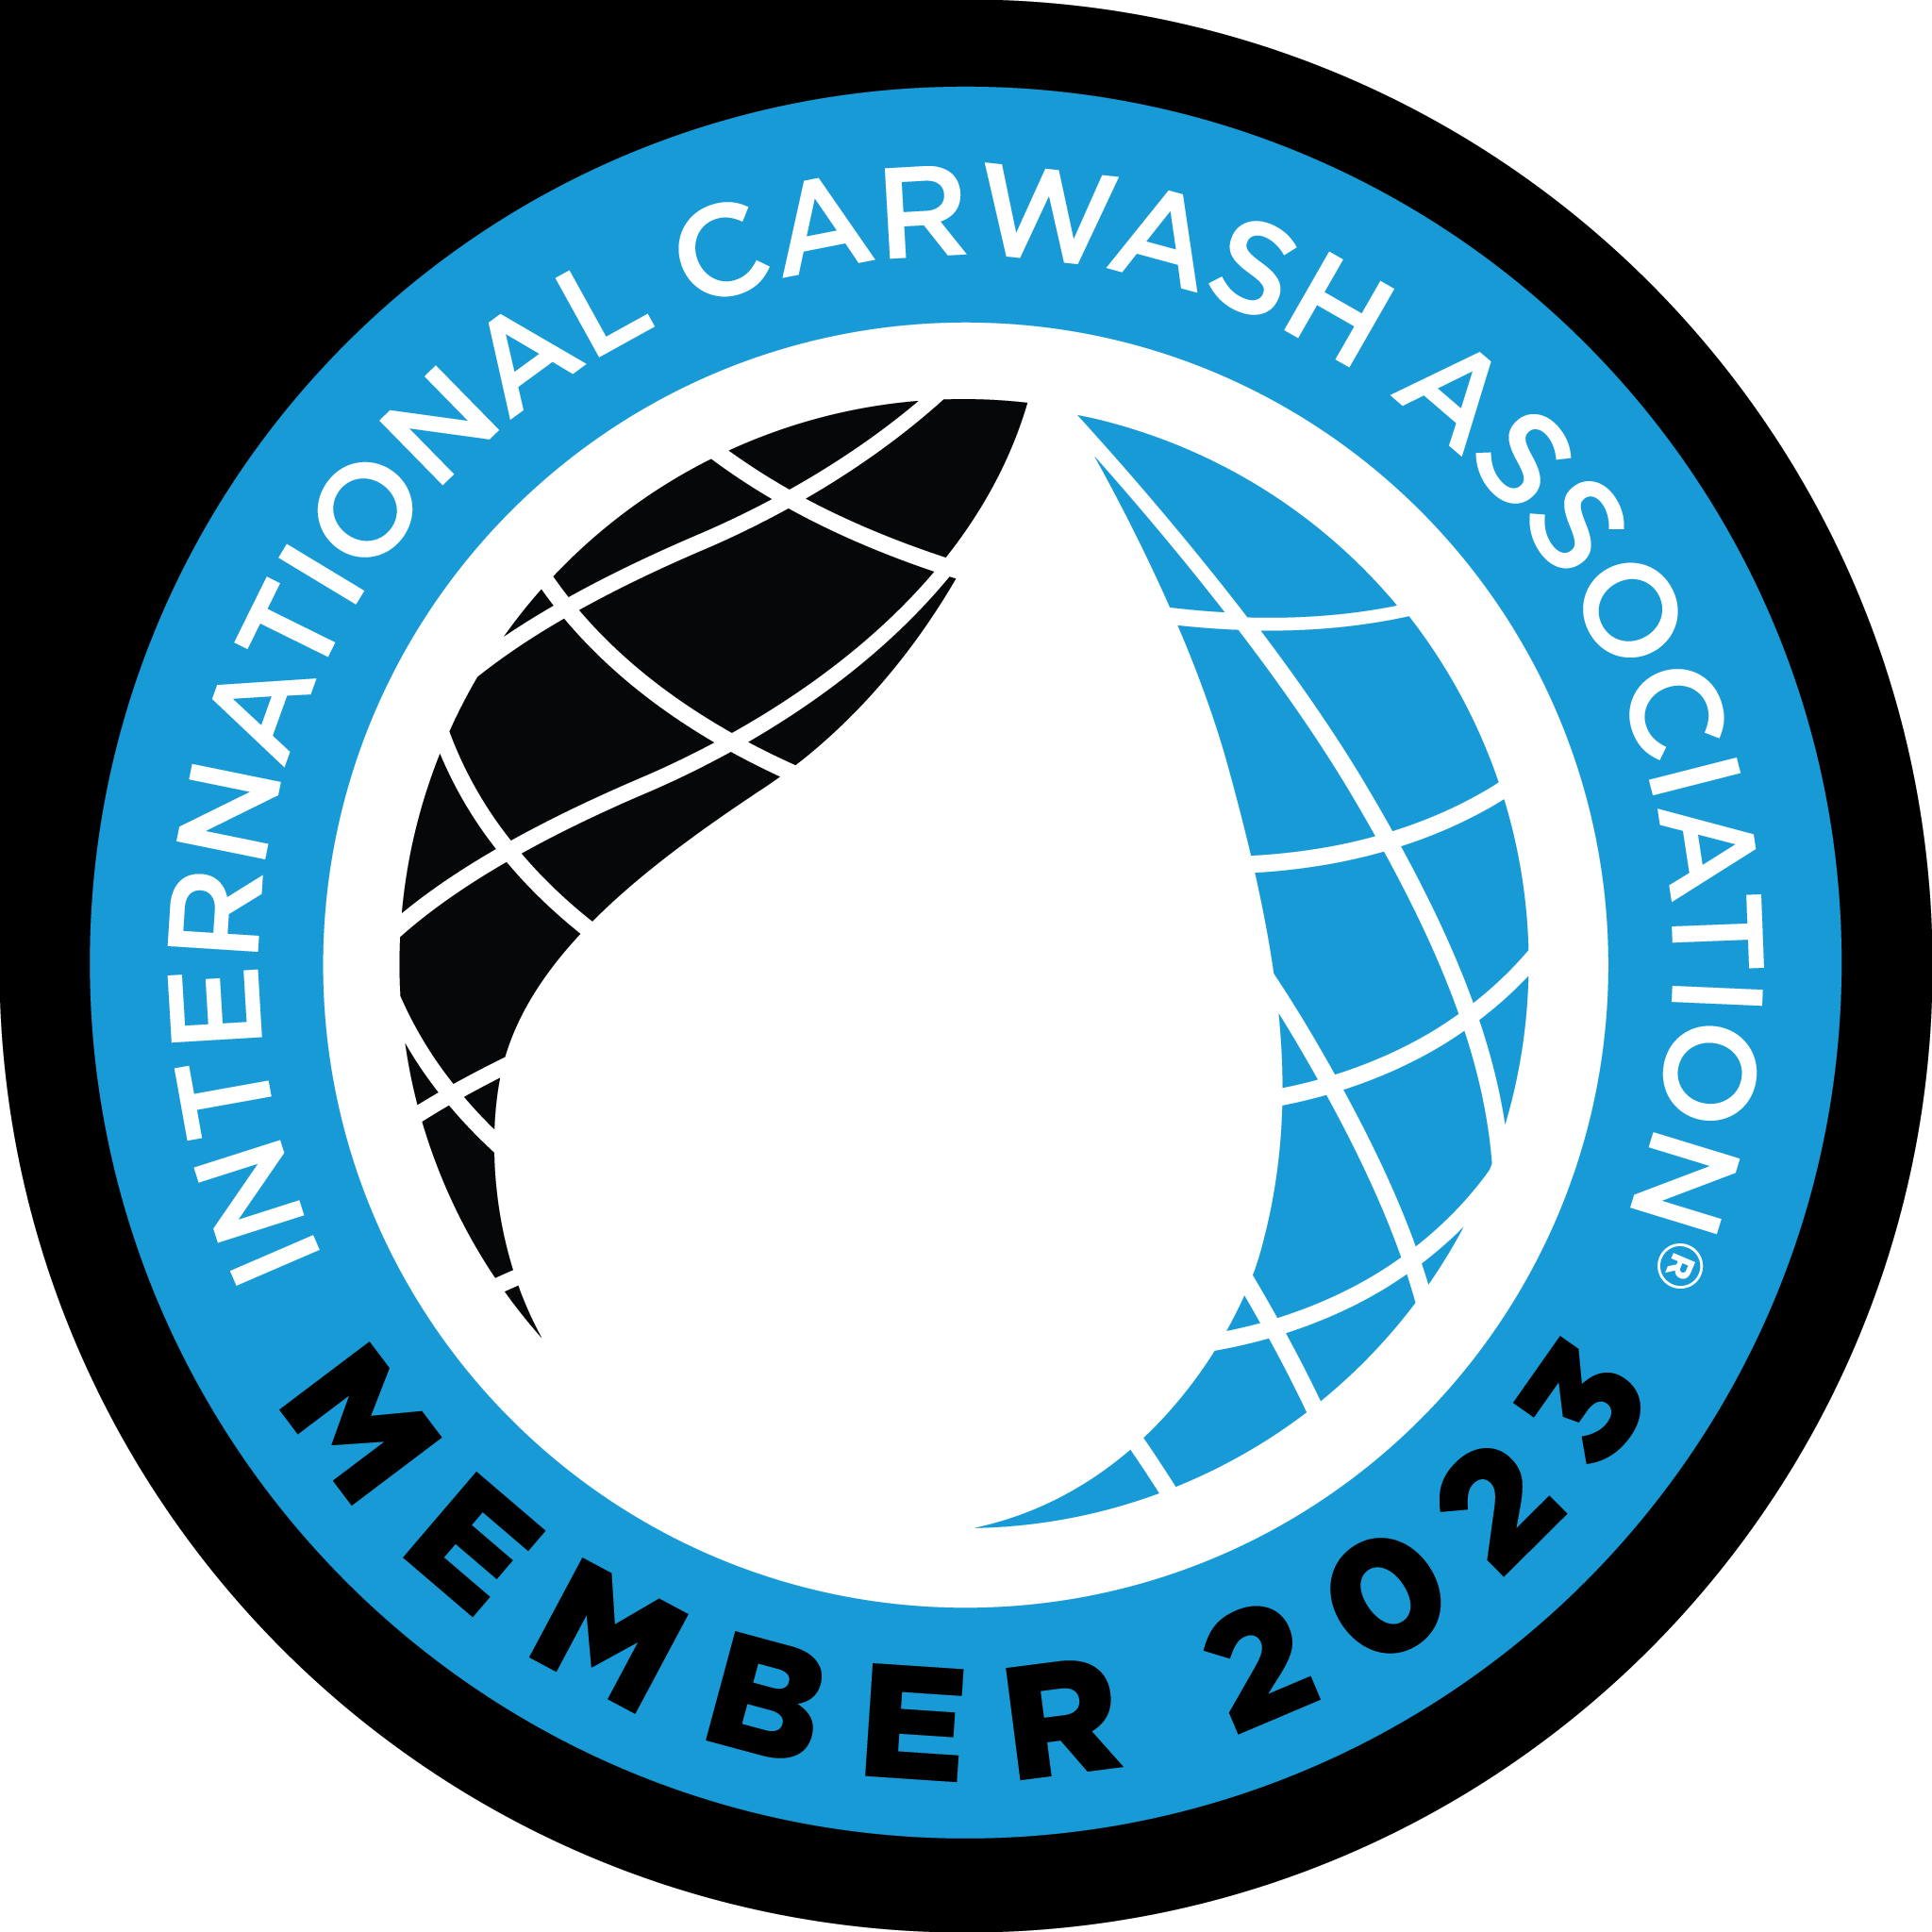 International Carwash Association member